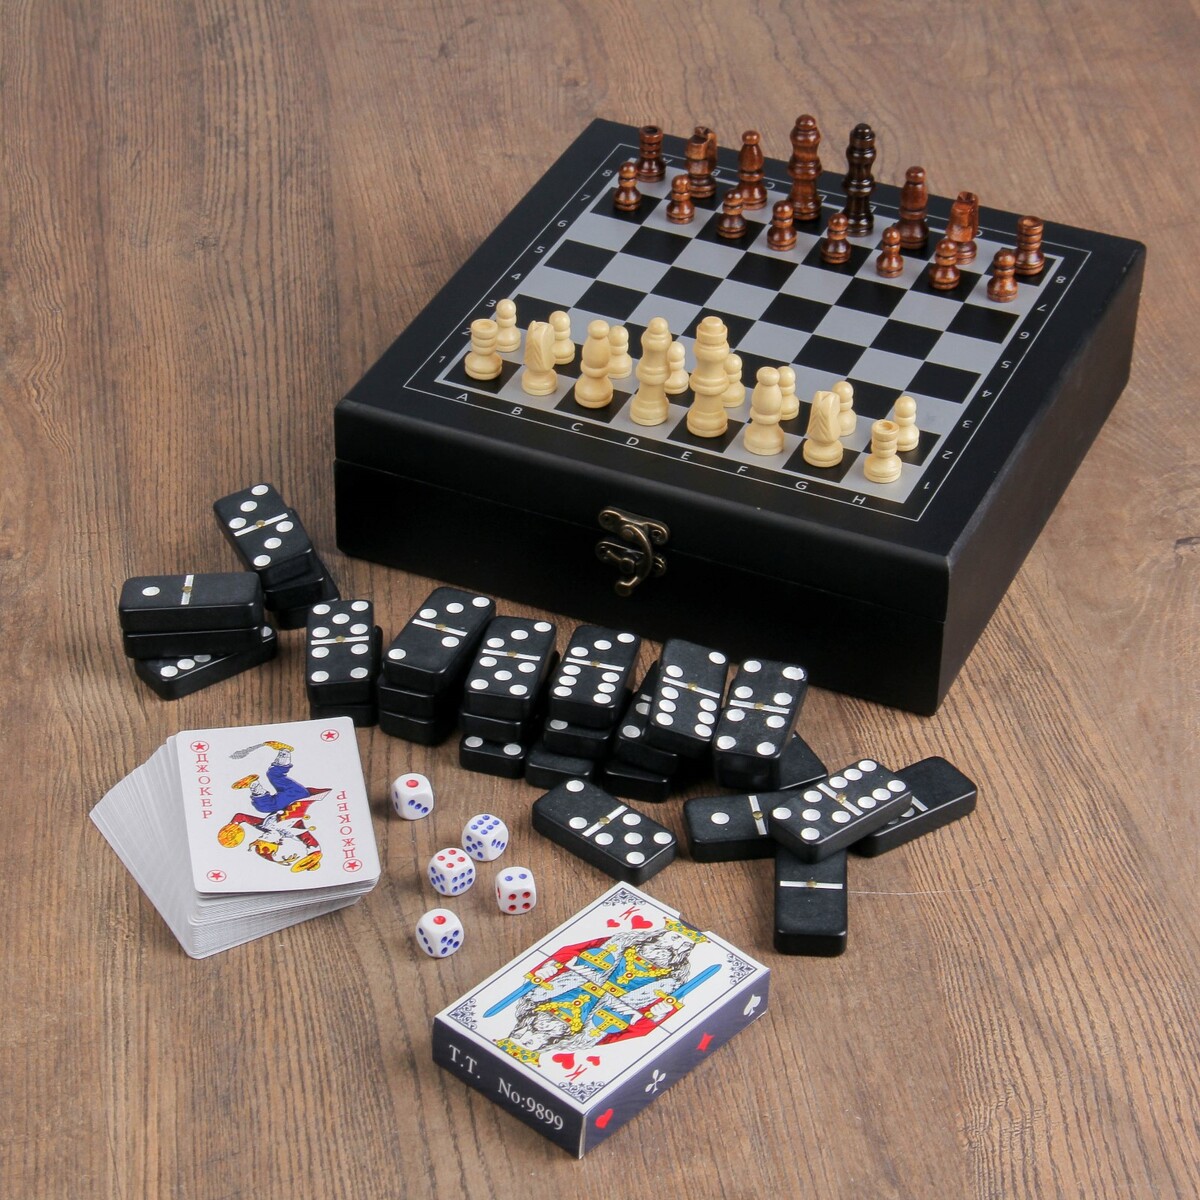 Набор 4 в 1: шахматы, домино, 2 колоды карт, 25 х 25 см осада или шахматы со смертью